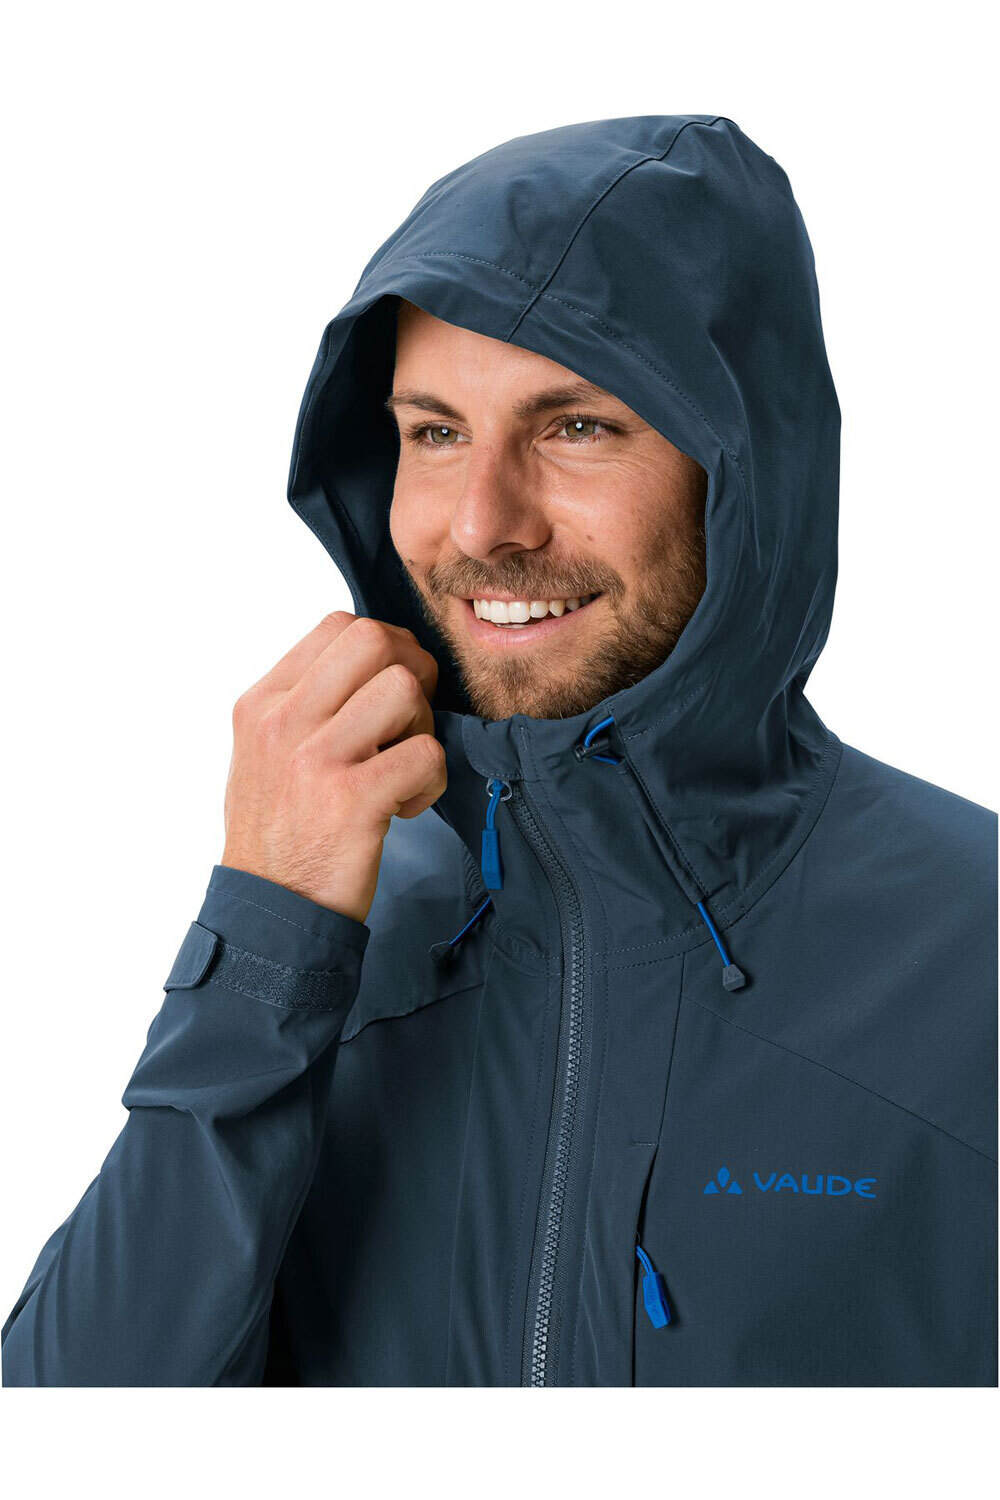 Vaude chaqueta impermeable hombre Men  s Elope Wind Jacket vista detalle